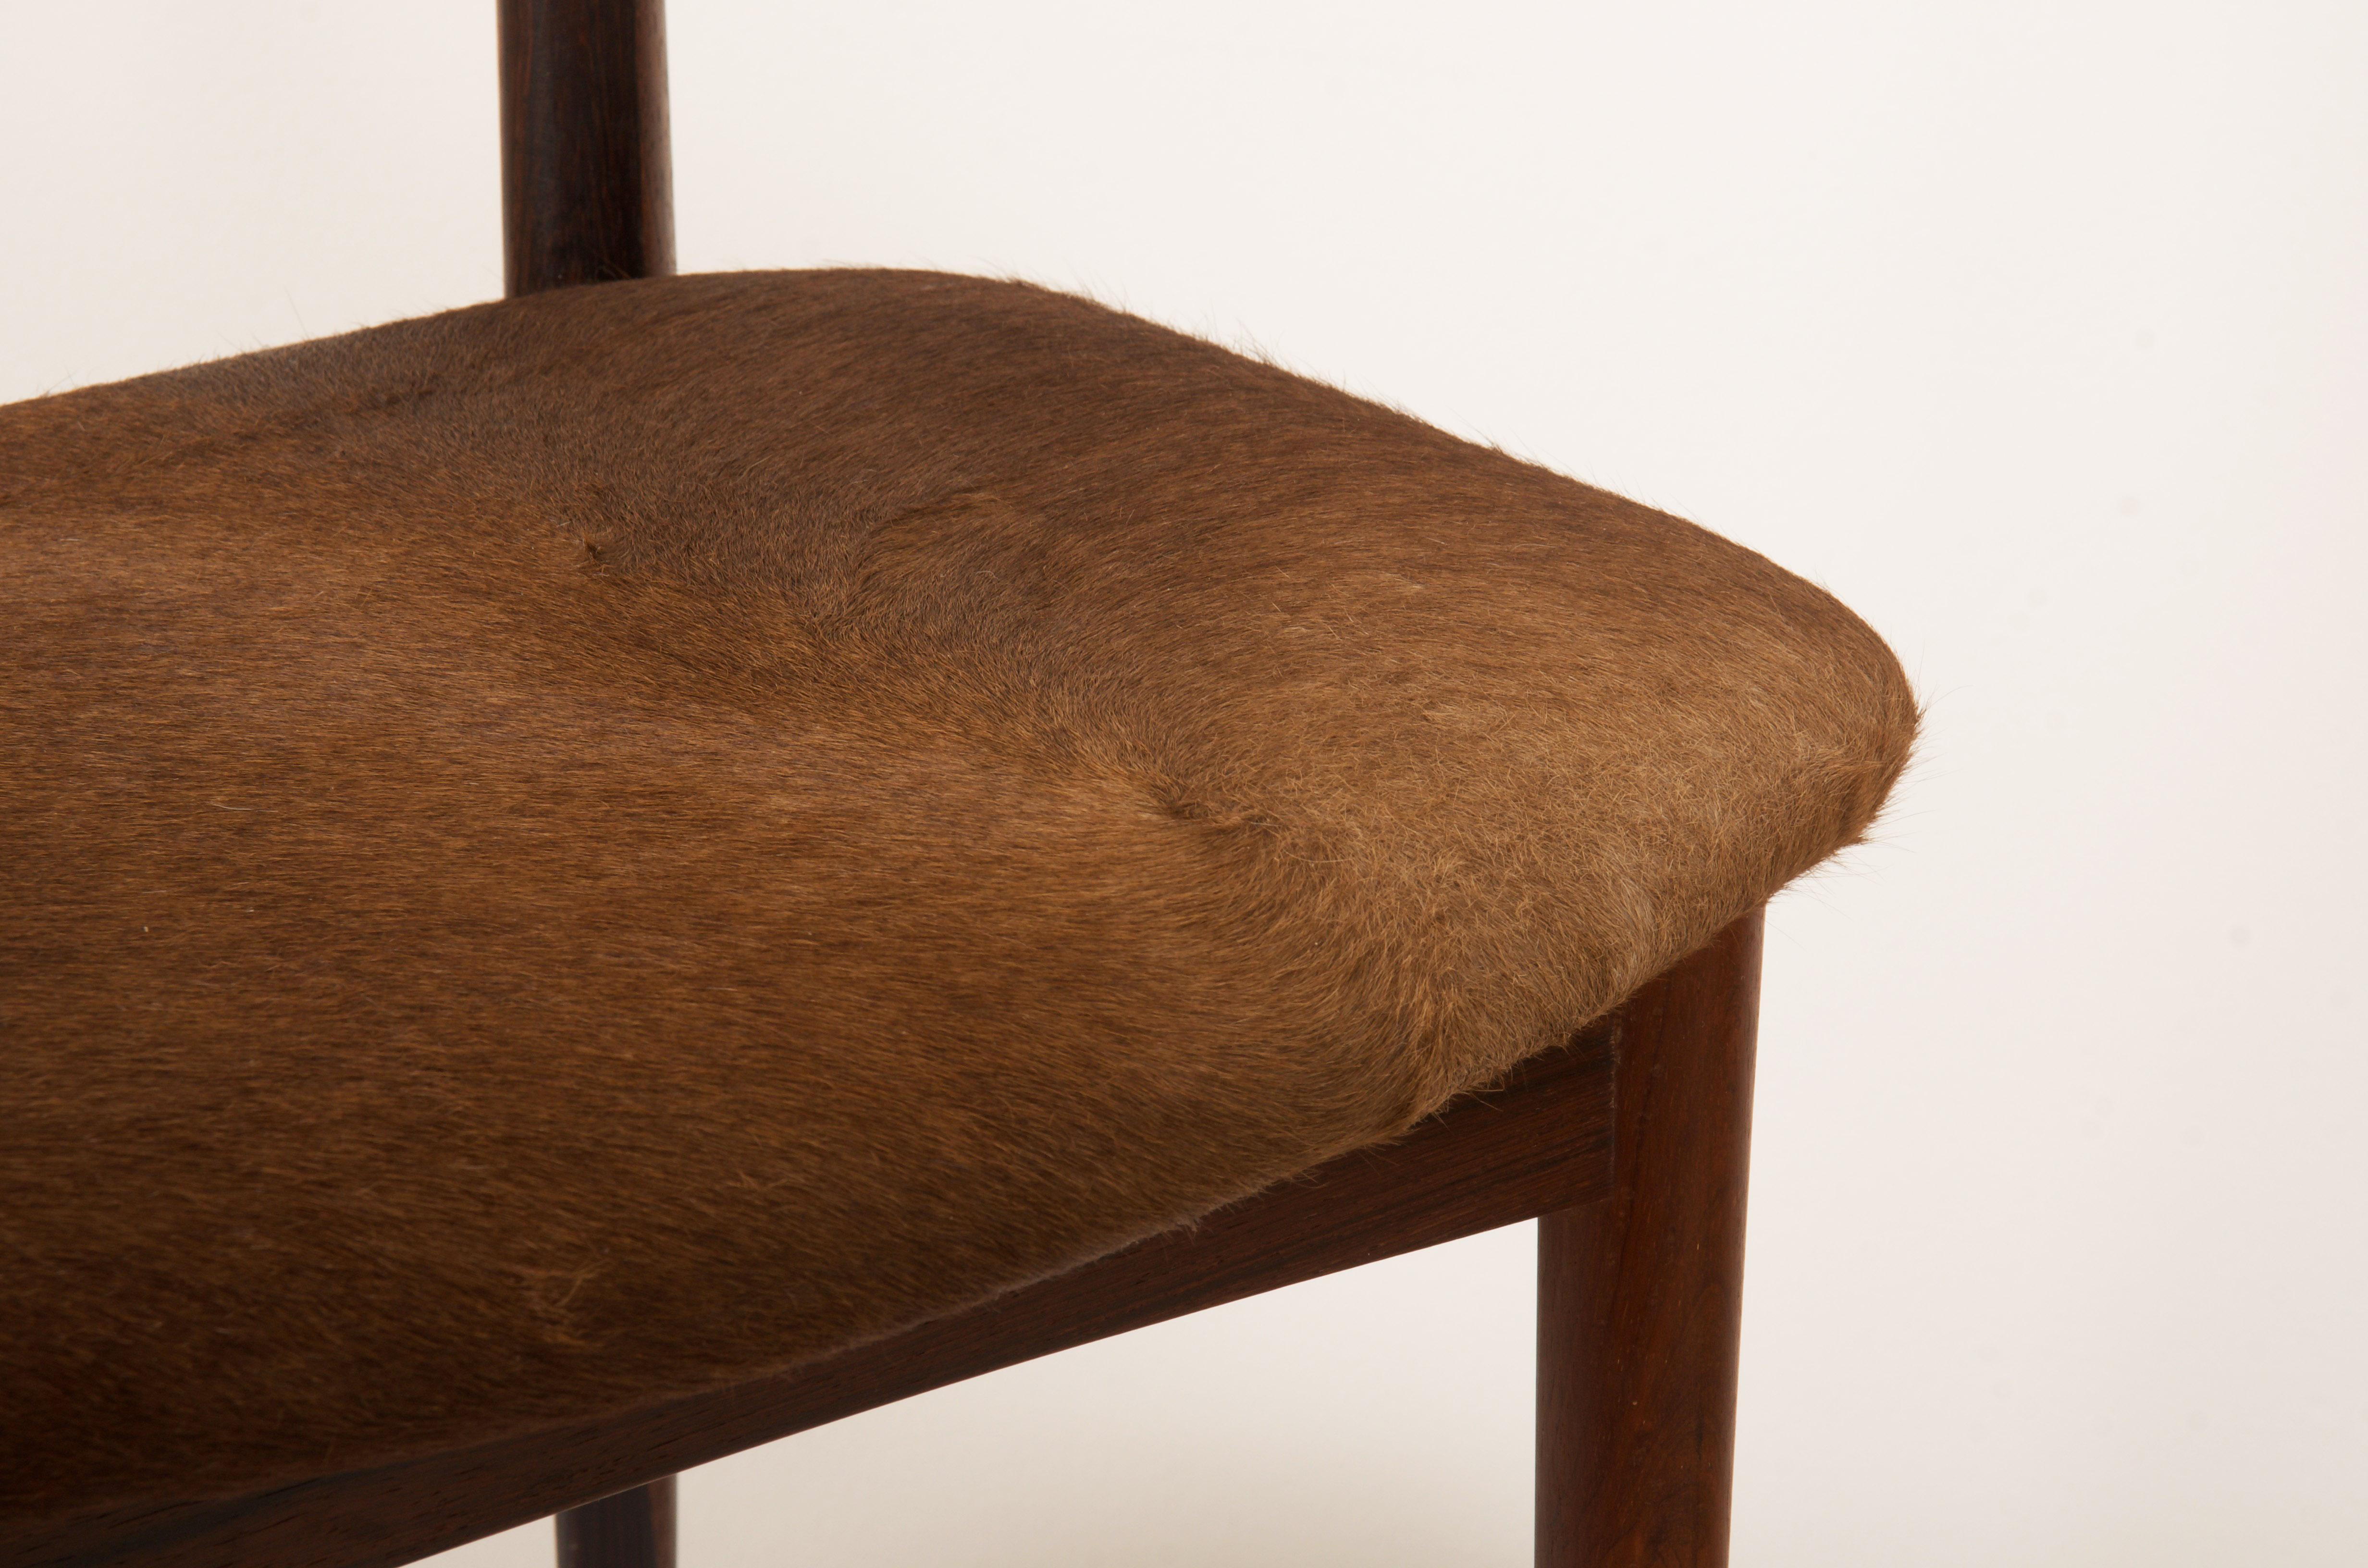 Chaise à manger en bois dur de style cowhorn, conçue par Helge Sibast et Borge Rammeskov pour Sibast Mobler, vers les années 1960. Élégants dossiers sculptés avec des montures en laiton tapissés de cuir de vachette marron.